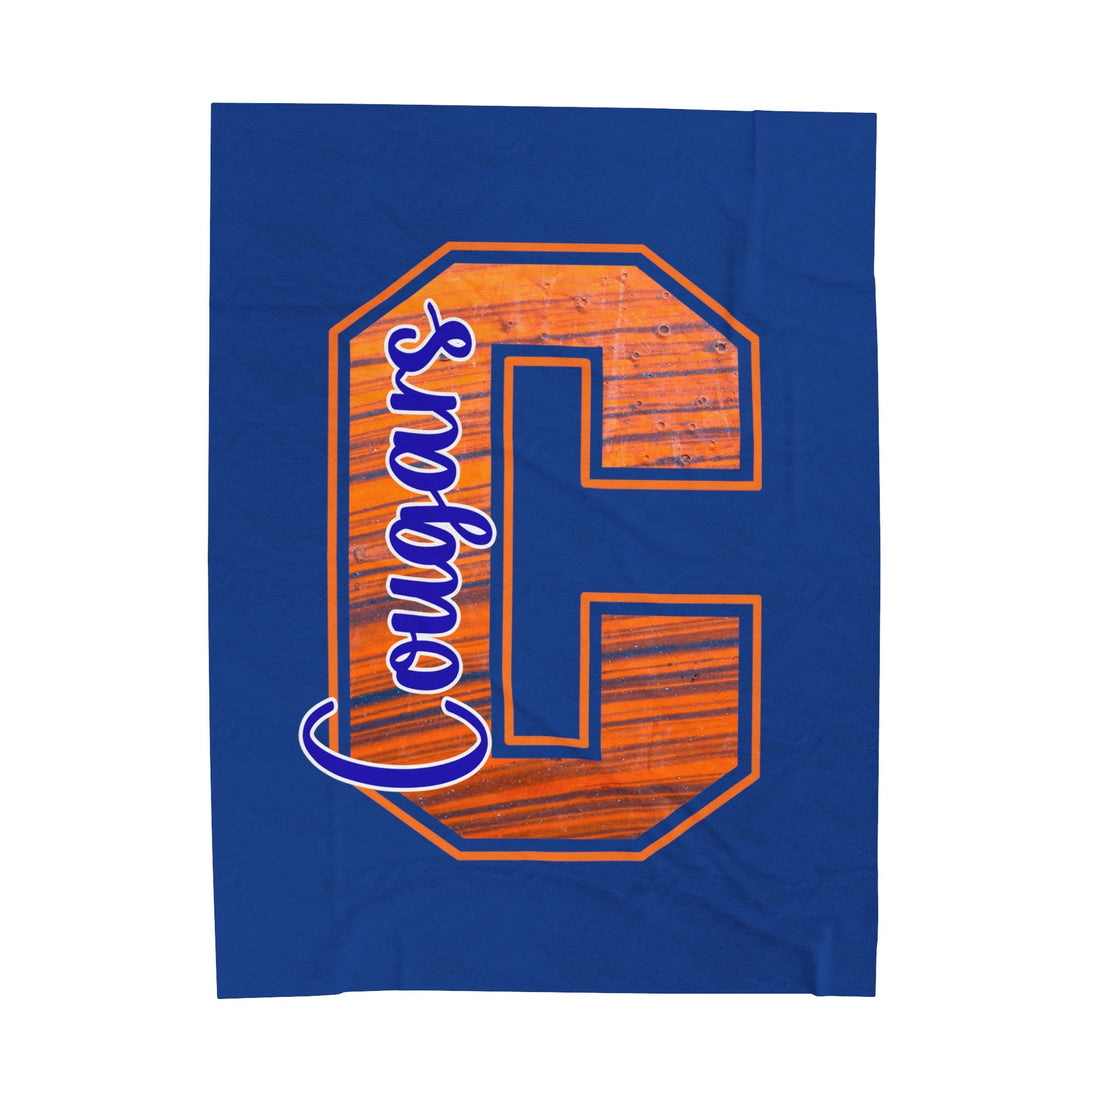 C Cougars Velveteen Plush Blanket - All Over Prints - Positively Sassy - C Cougars Velveteen Plush Blanket